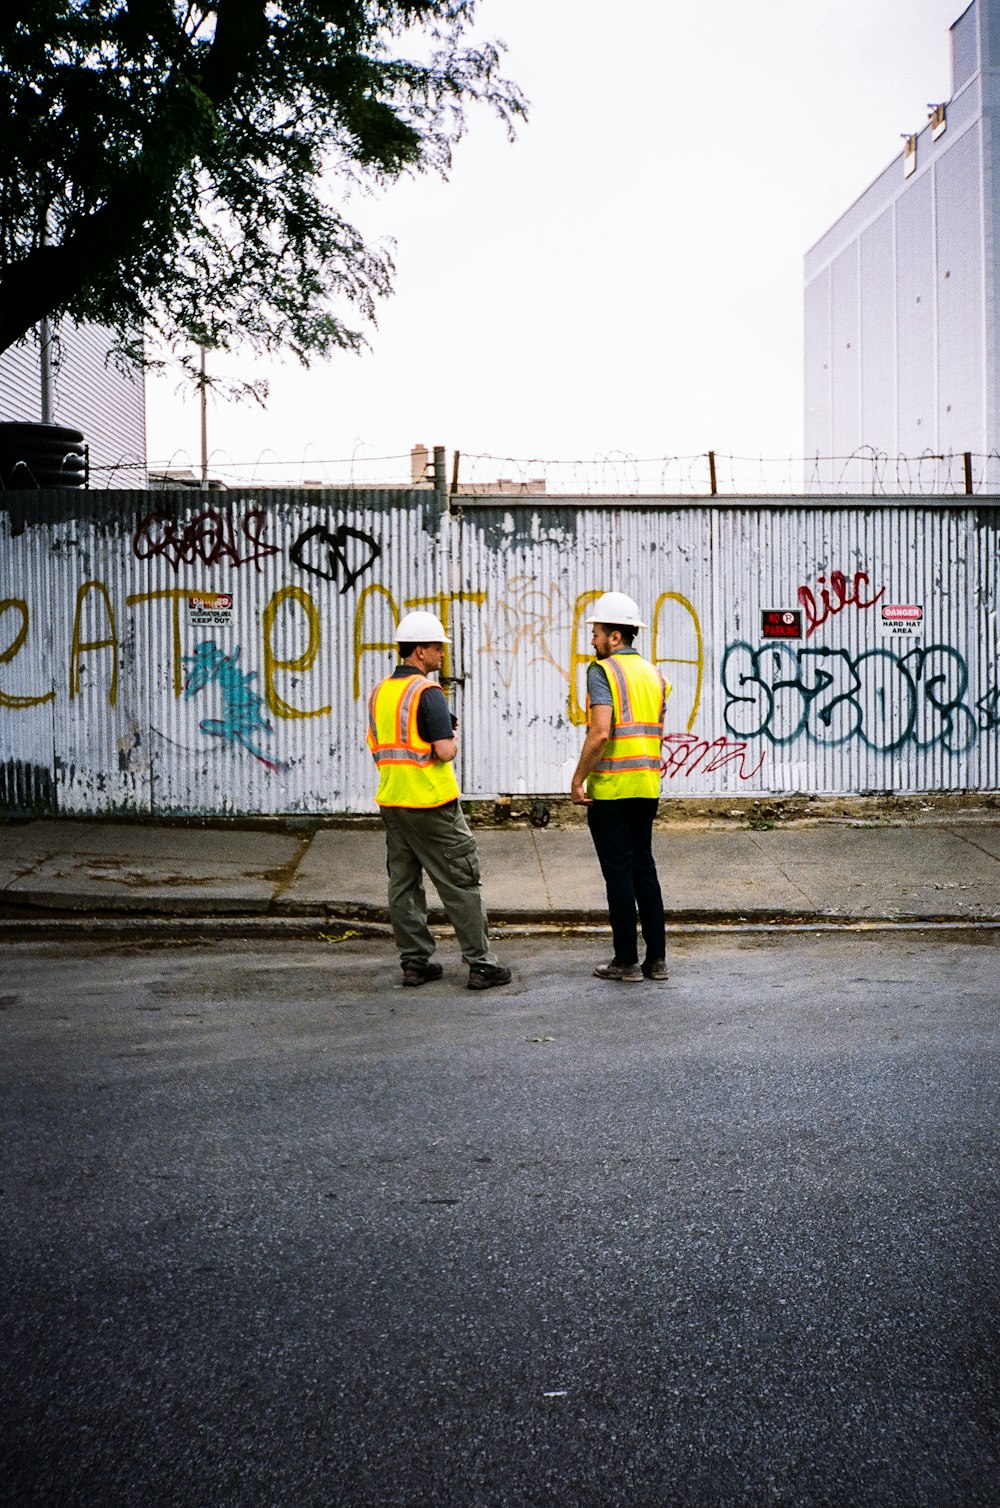 Mann in gelber Jacke und schwarzer Hose steht tagsüber mit Graffiti an der Wand